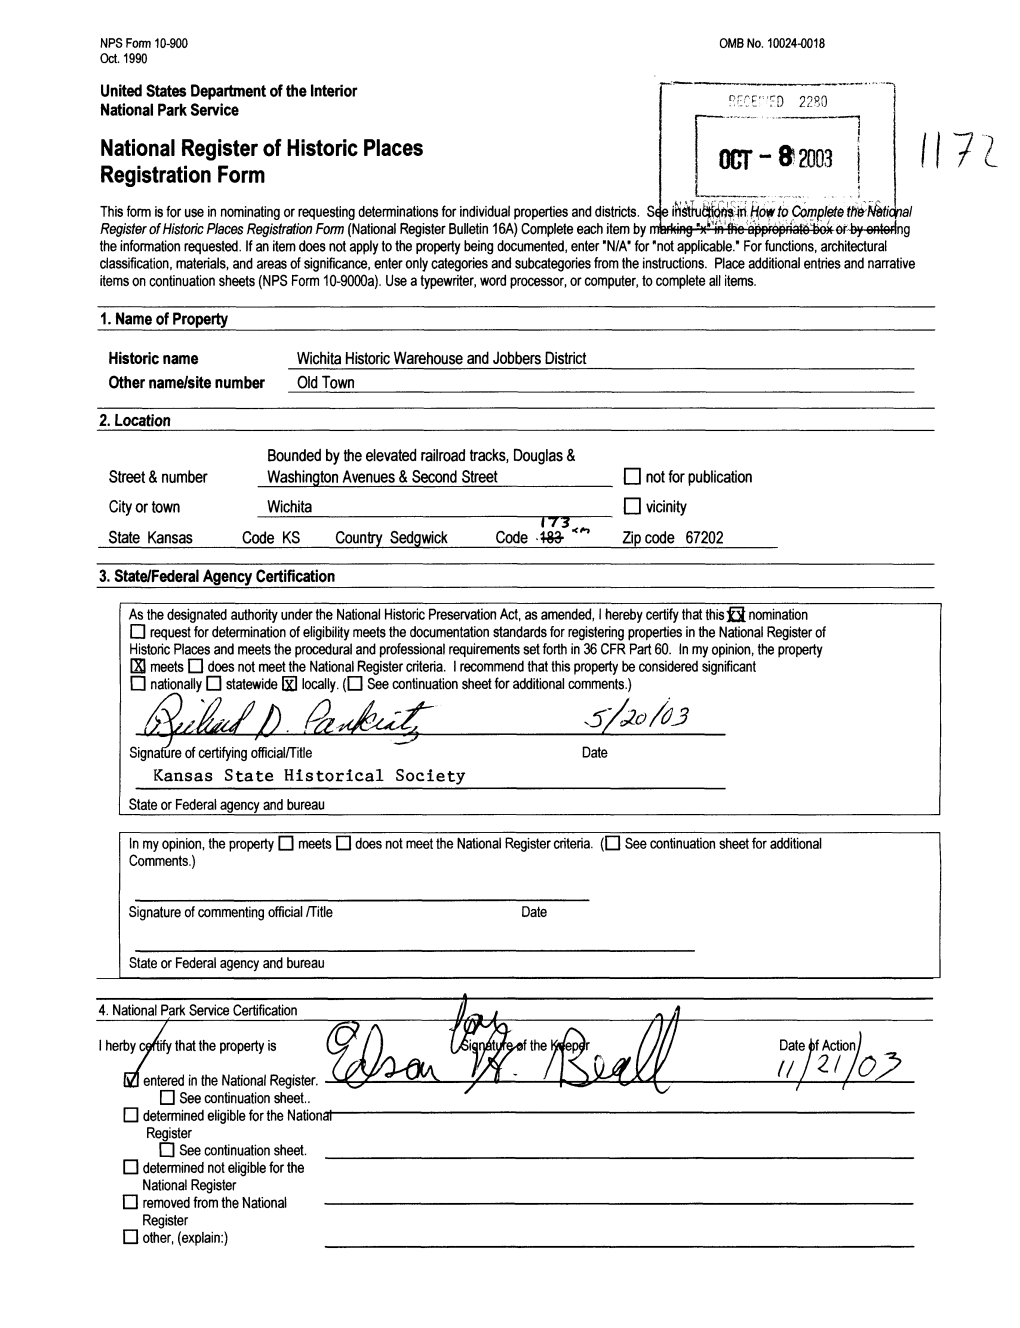 National Register of Historic Places Registration Form I?